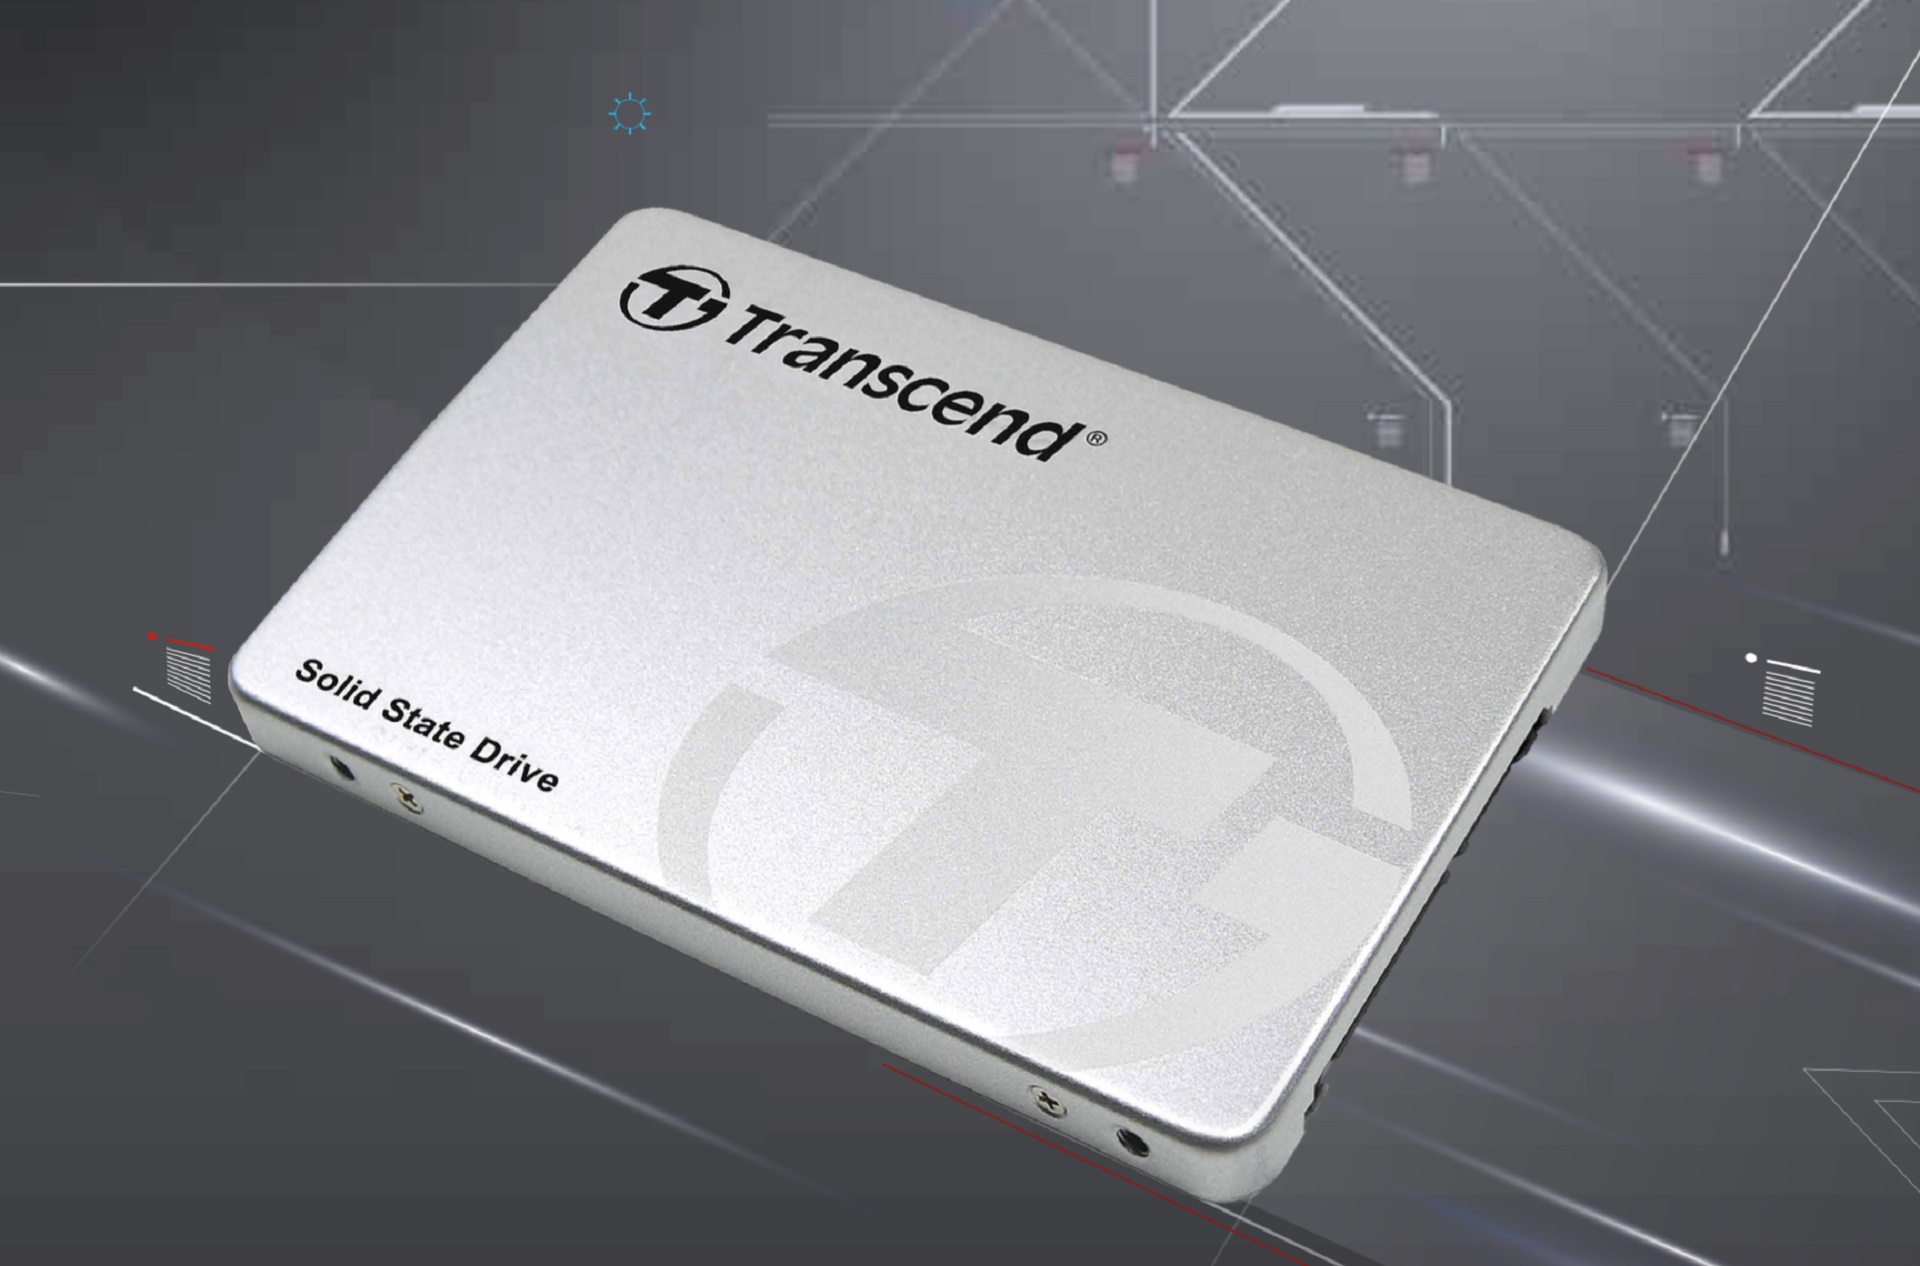 Transcend ra mắt ổ SSD 230 dung lượng lớn, hiệu năng và độ tin cậy cao